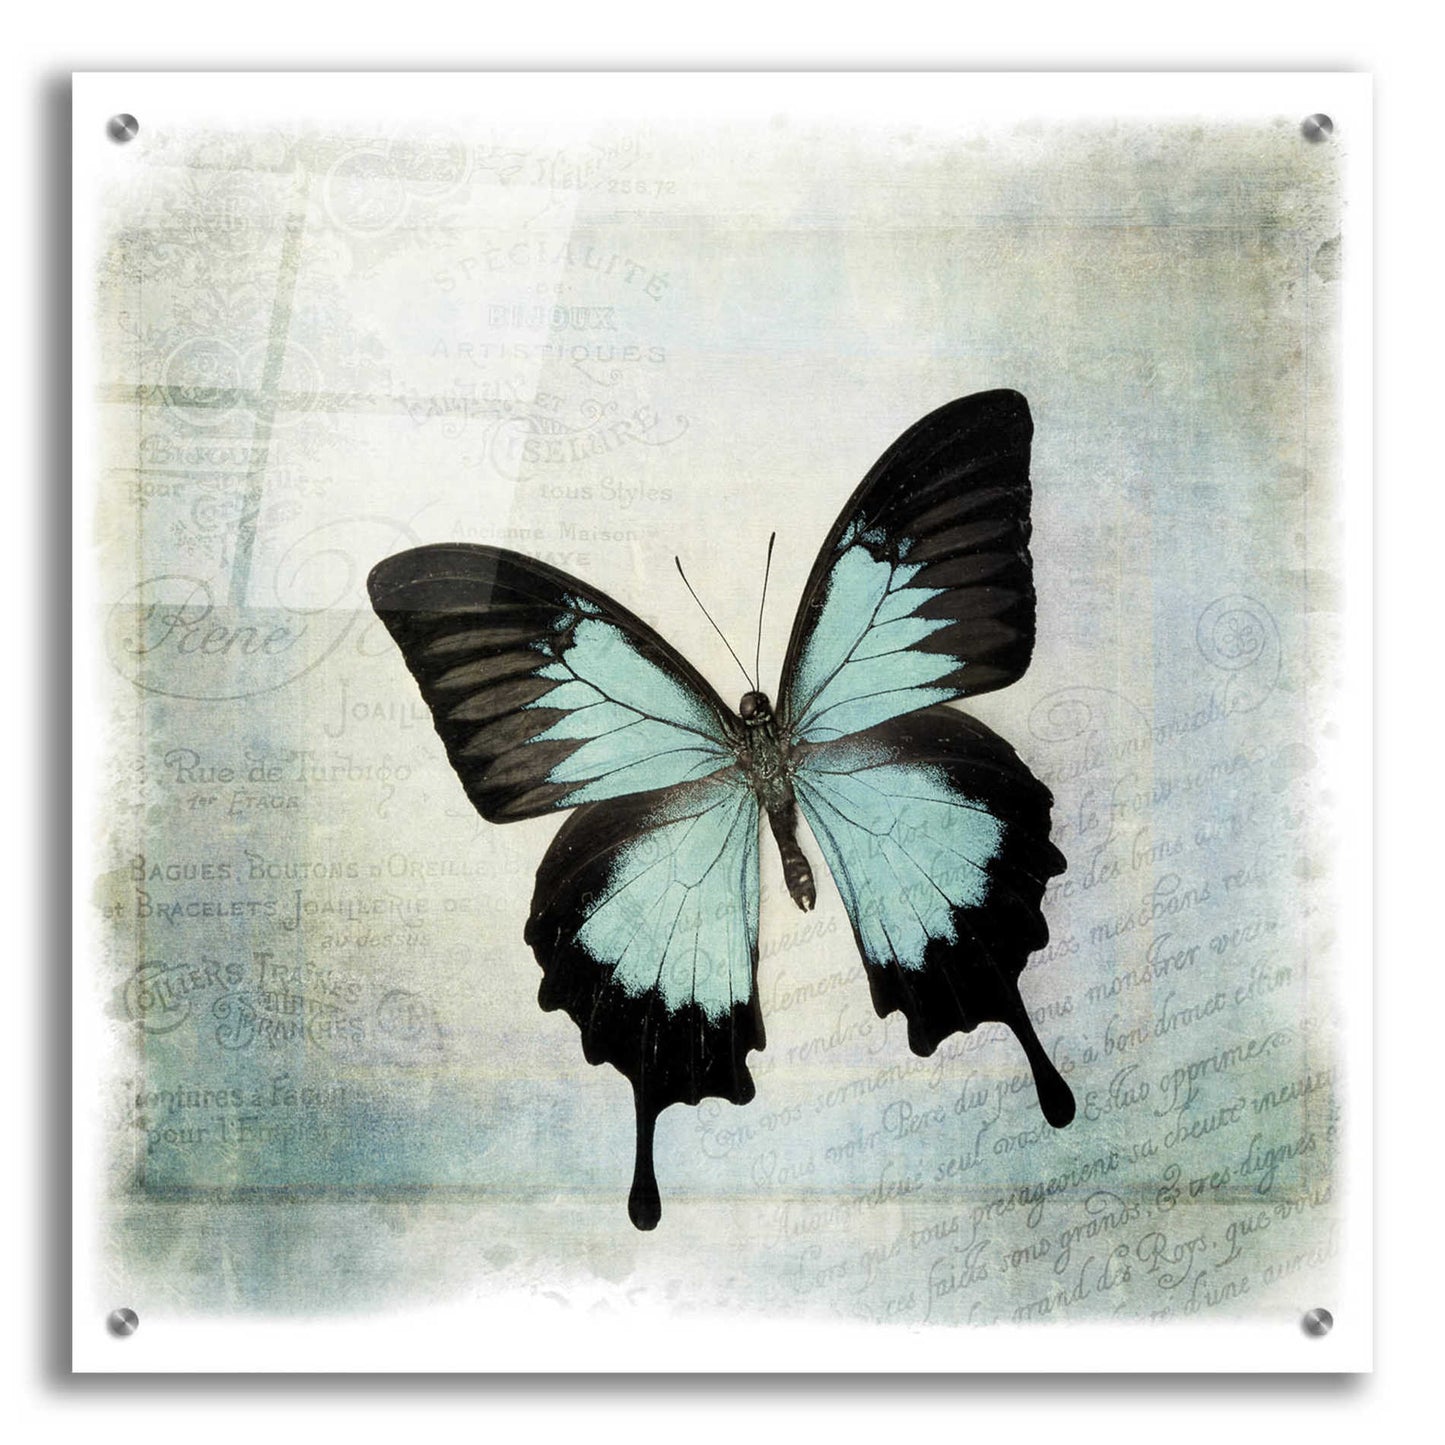 Epic Art 'Floating Butterfly III' by Debra Van Swearingen, Acrylic Glass Wall Art,24x24